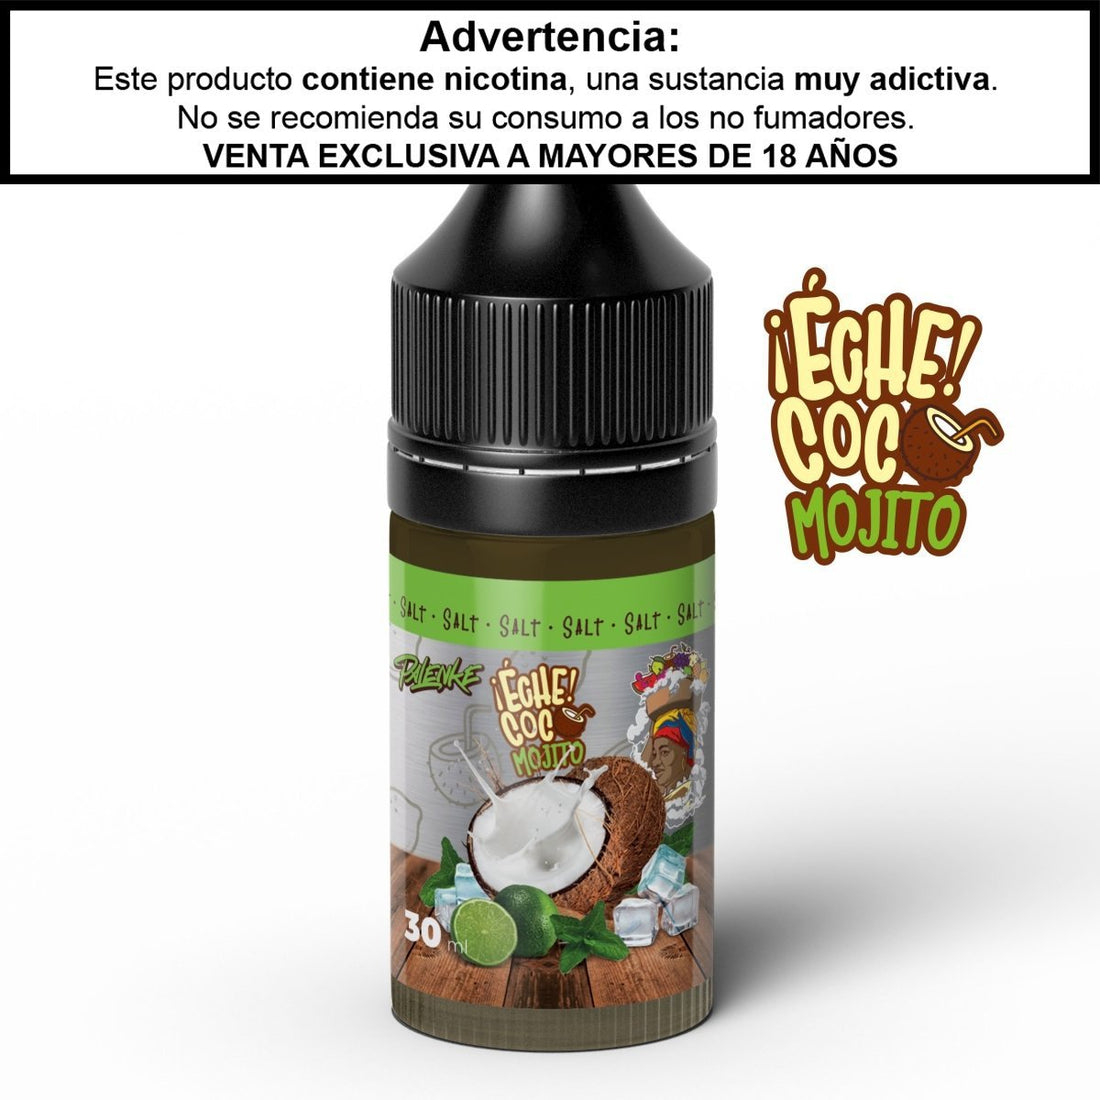 ¡Eche Coco! Mojito Sales - Palenke Ejuice - Sales de Nicotina - DIY VAPE SHOP | SN-PLK-ECM-25